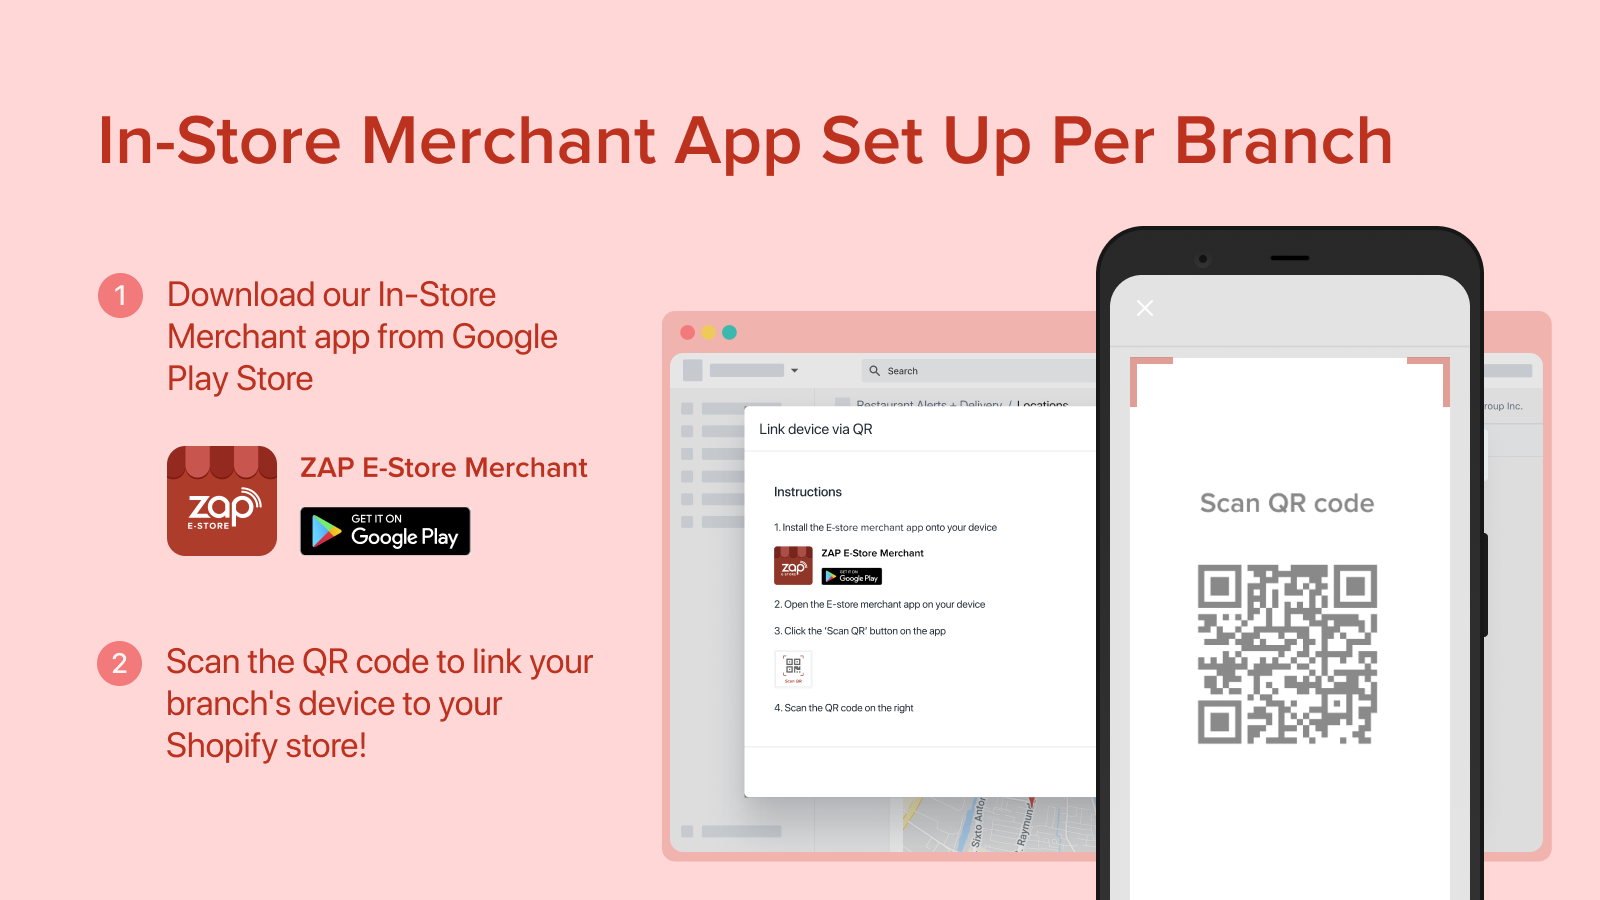 In-Store Merchant App Set Up per Branch